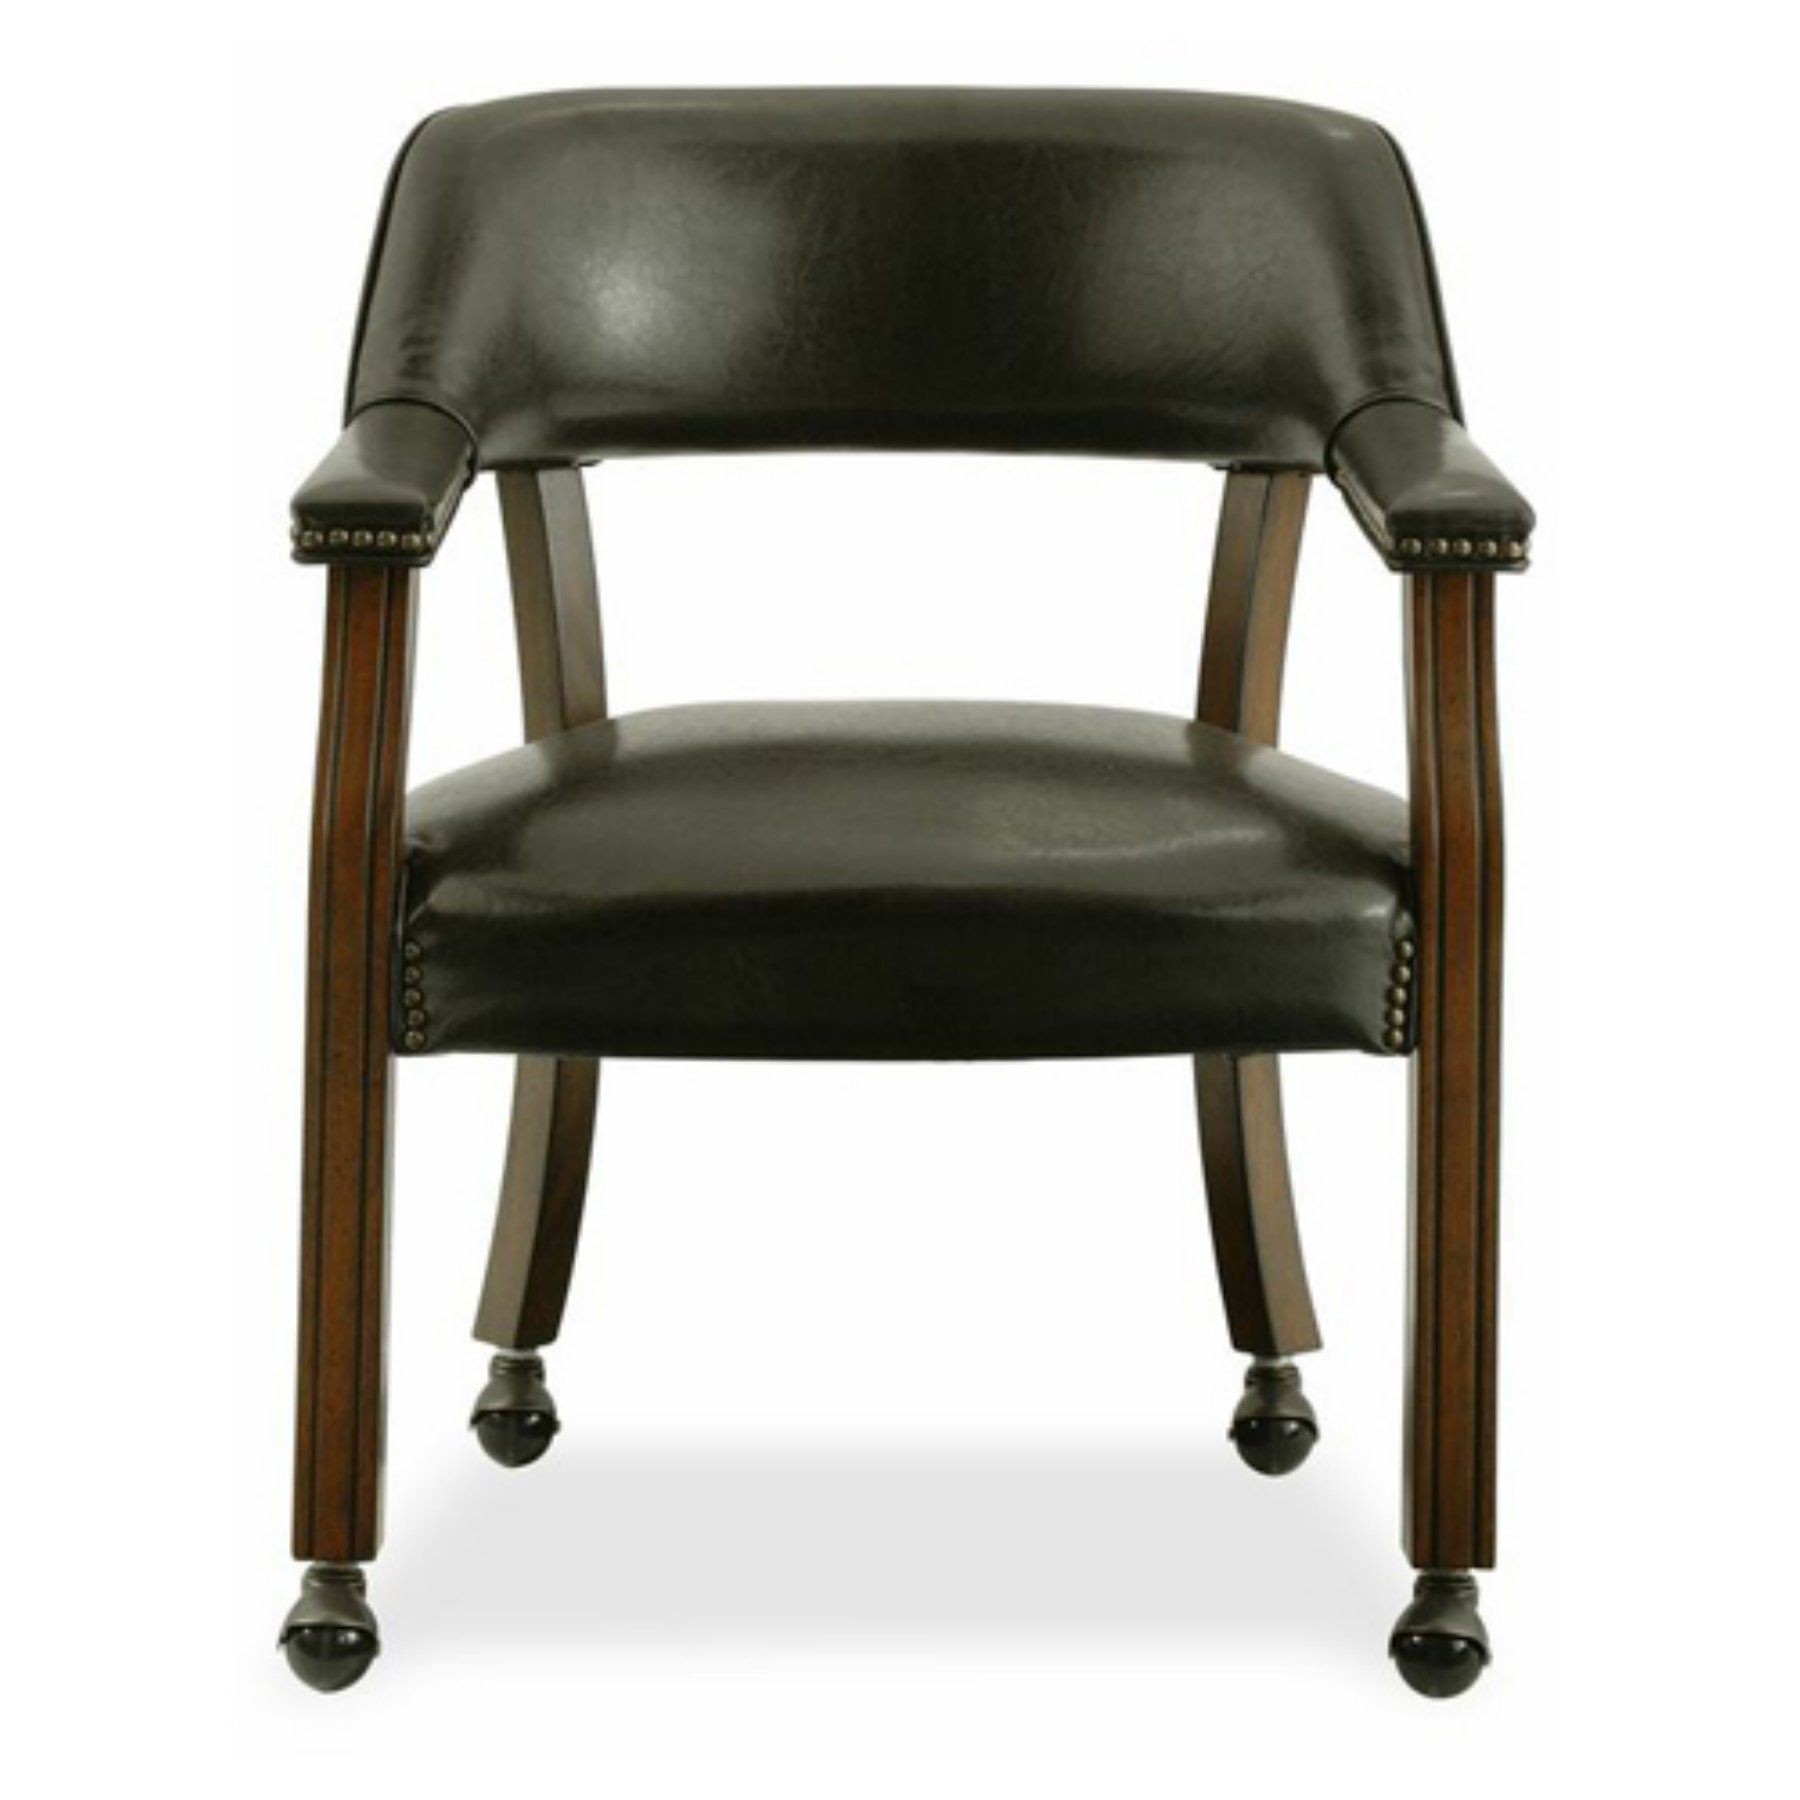 Dark brown vinyl upholstered caster chair